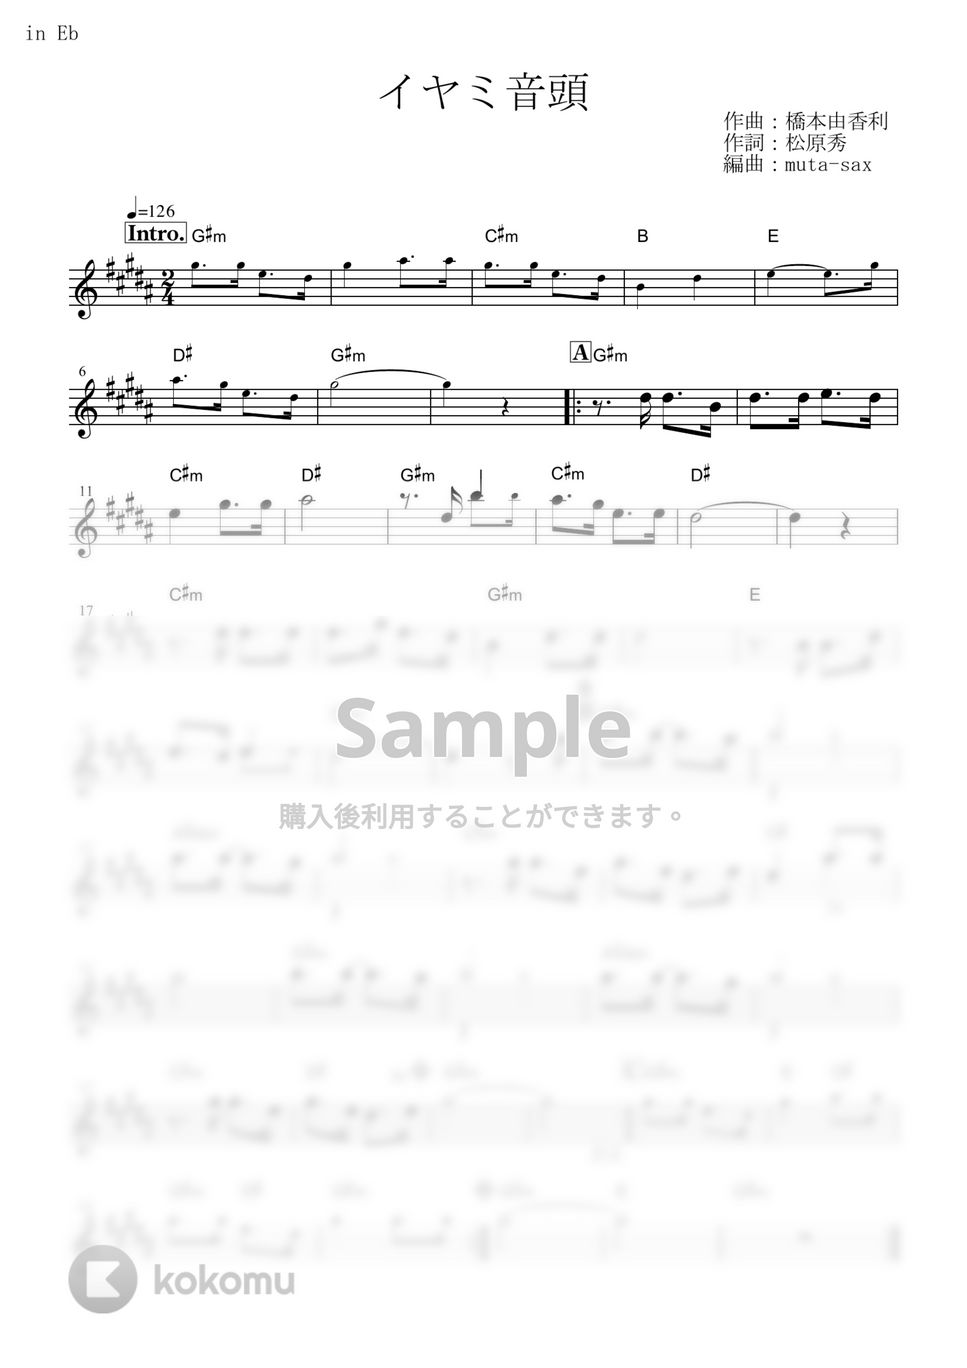 イヤミ(CV.鈴村健一) - イヤミ音頭 (『おそ松さん』 / in Eb) by muta-sax